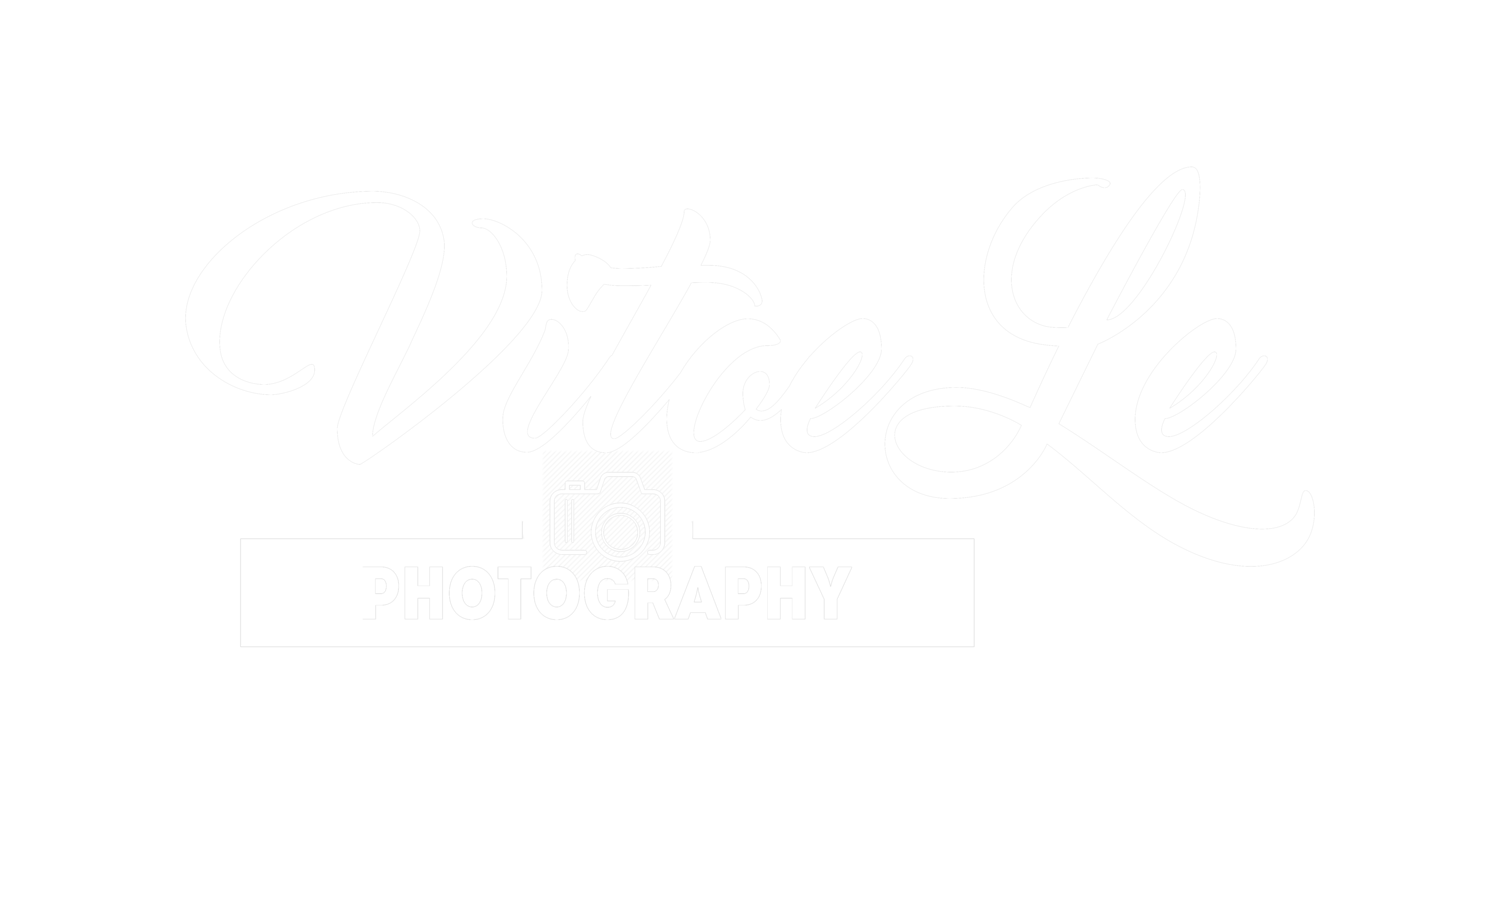 Vitoe Le Photography